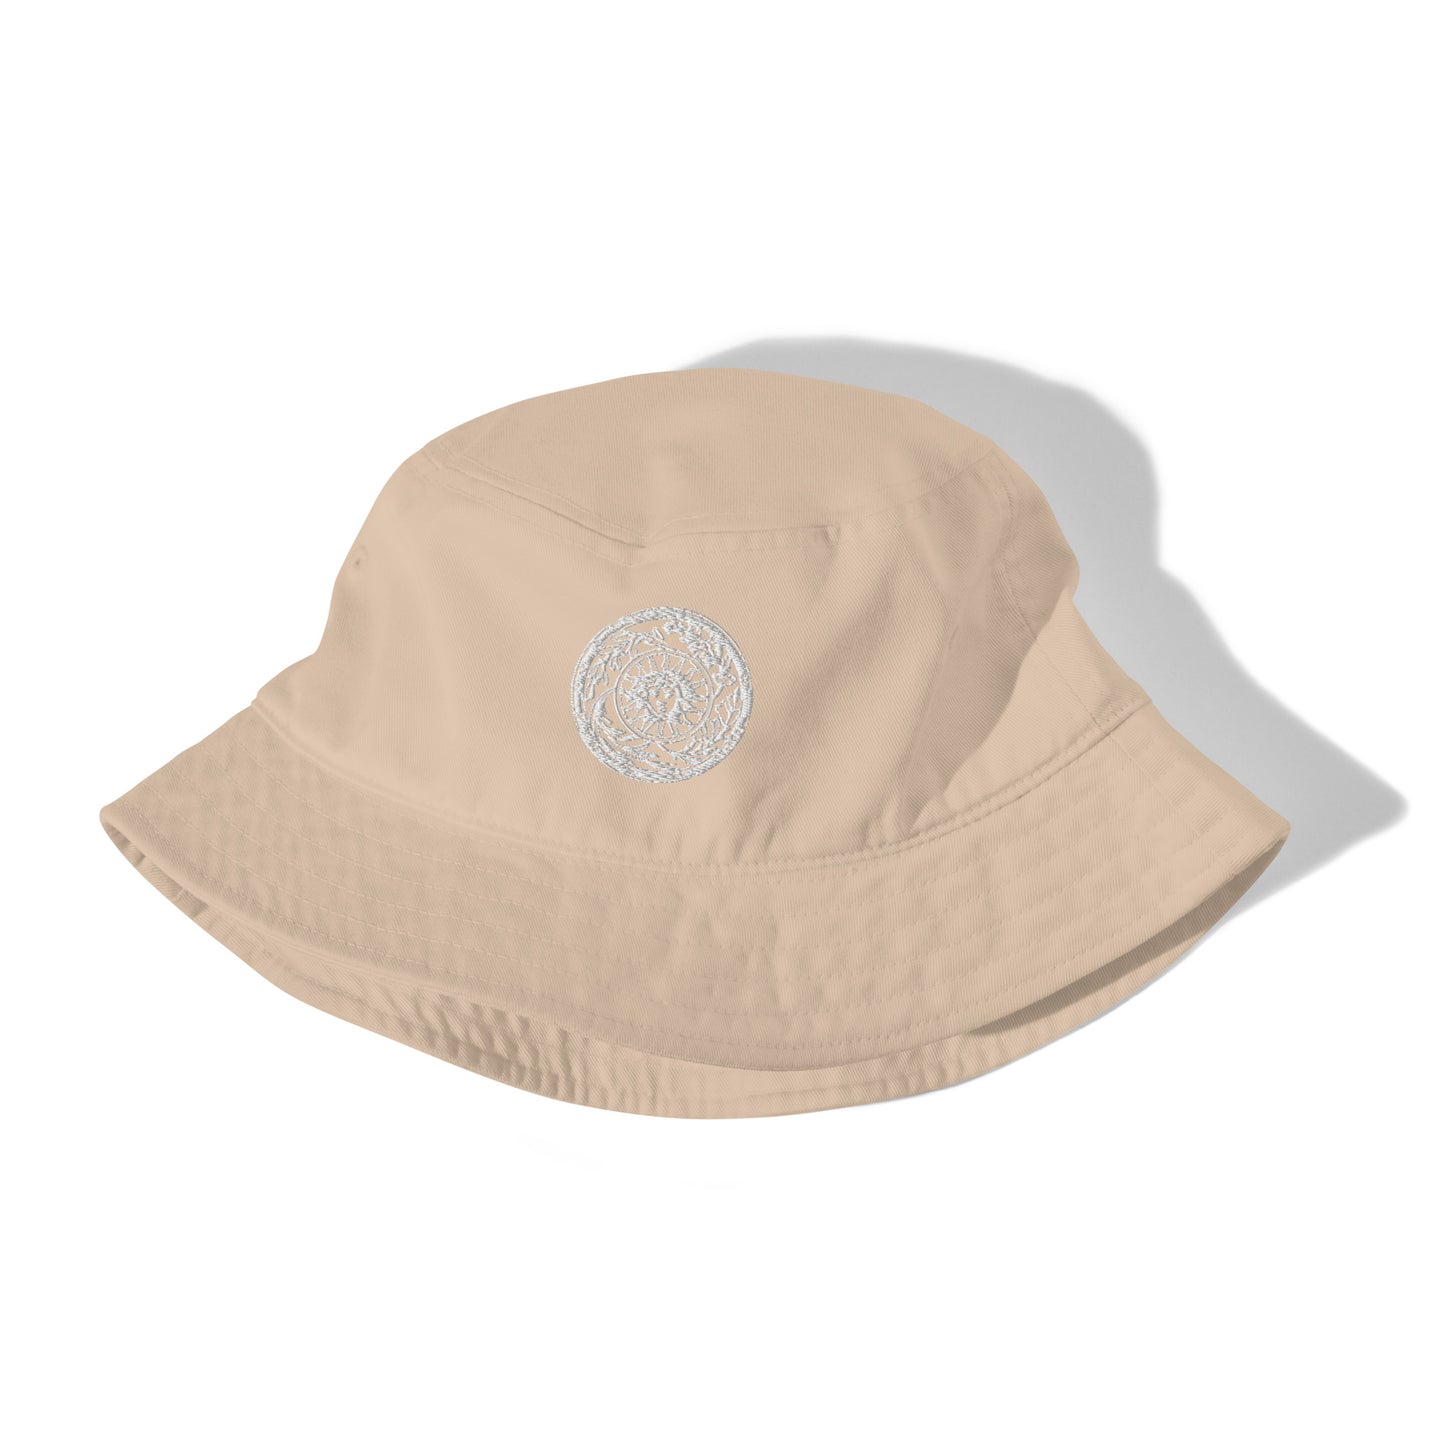 Medusa Sun Medallion Organic Cotton bucket hat